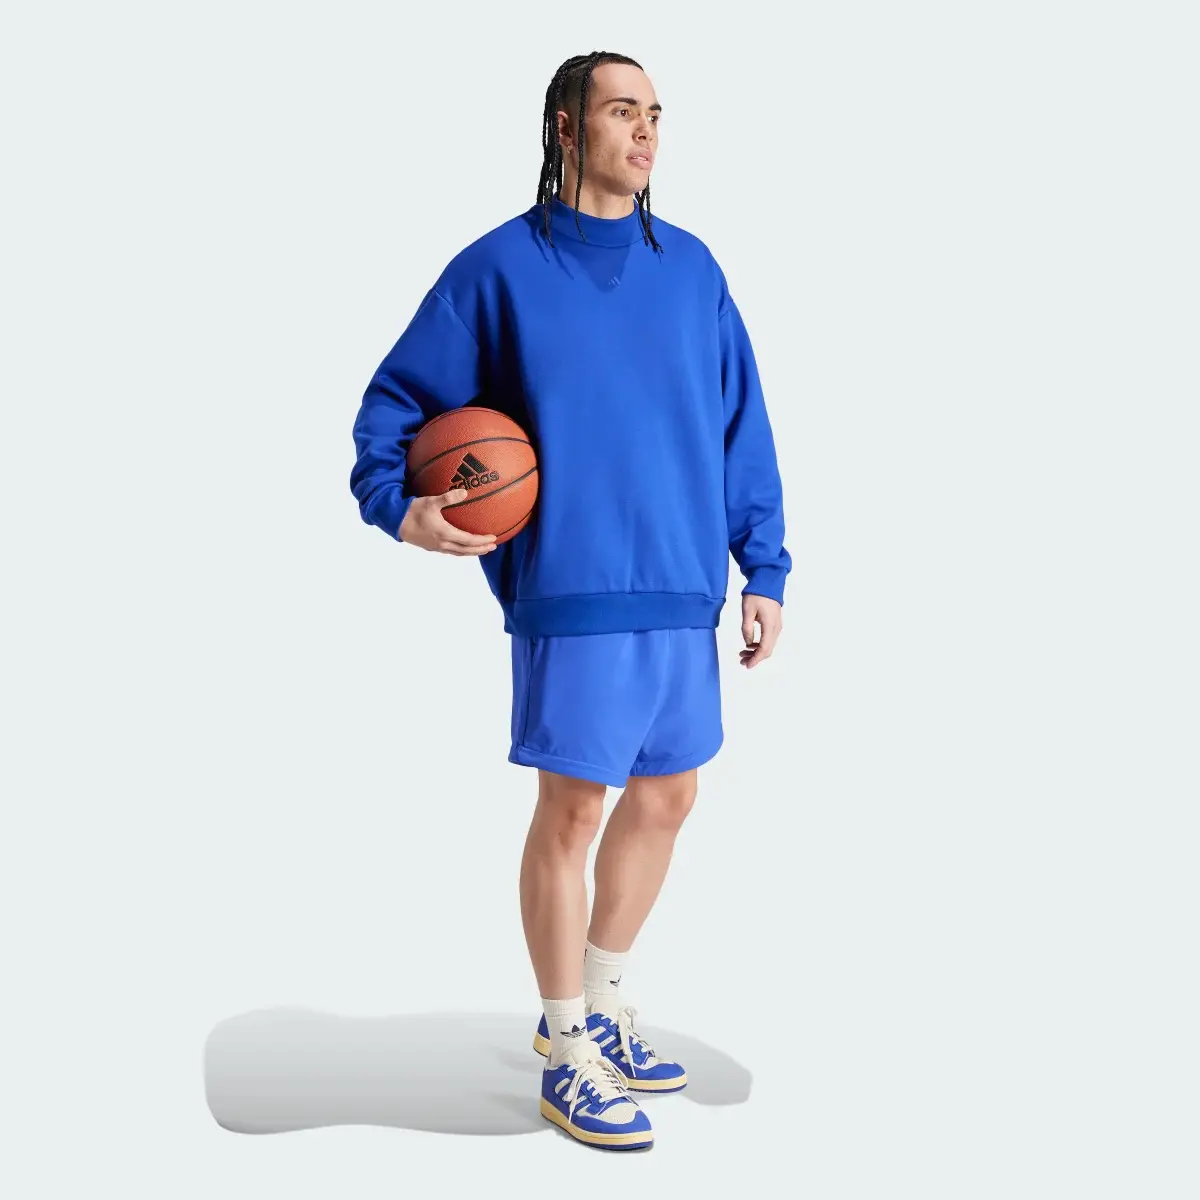 Adidas Pantalón corto adidas Basketball Woven. 3